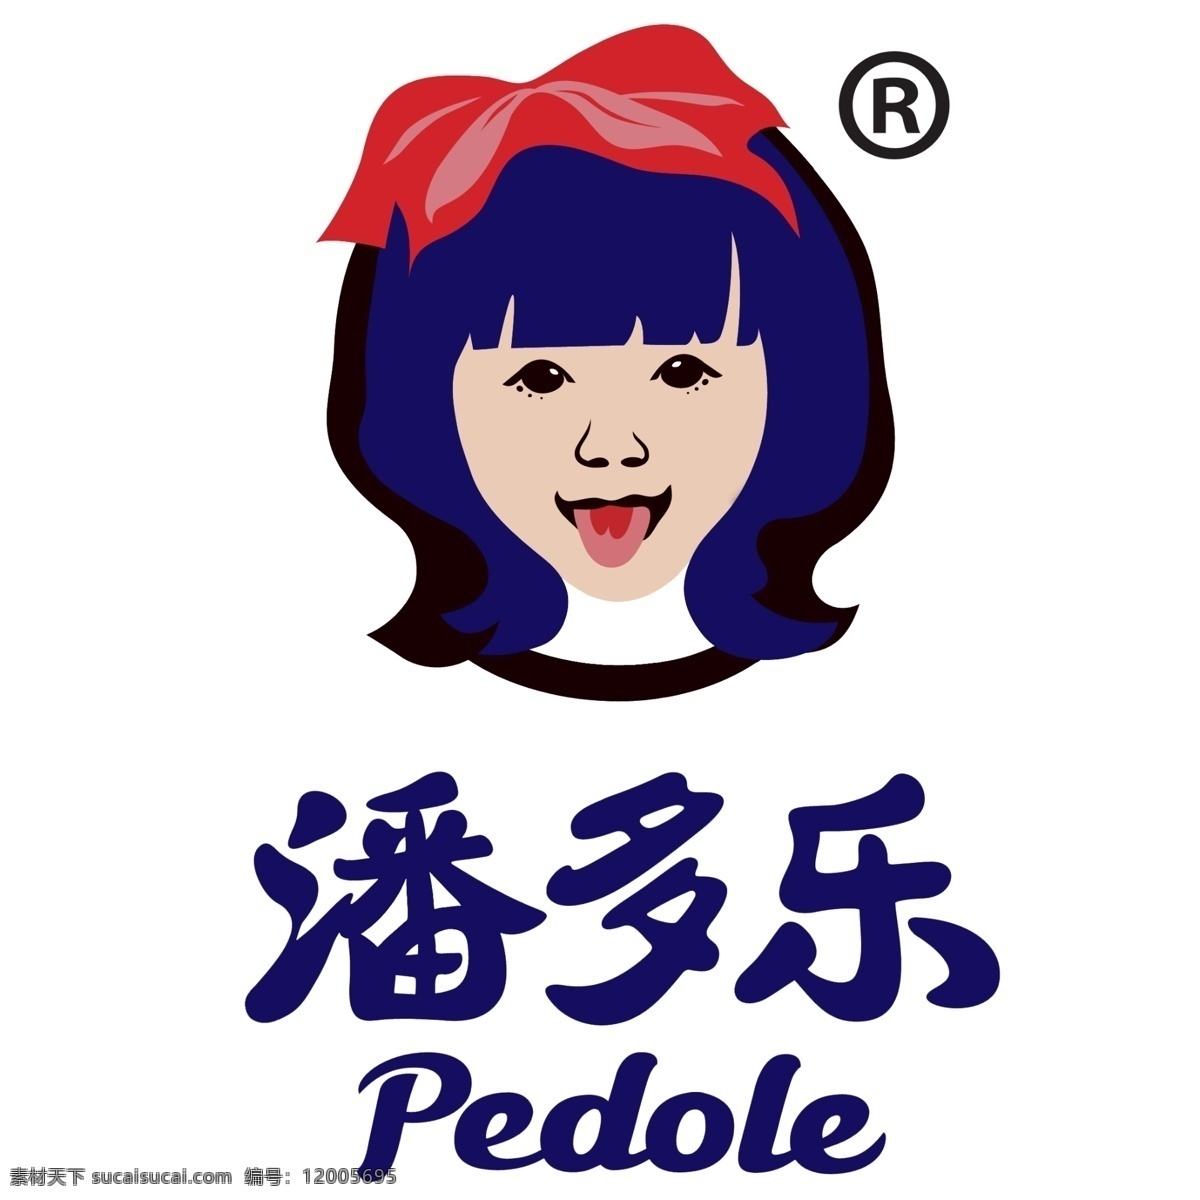 潘多 乐 海苔 标志 潘多乐海苔 潘多乐 上海雅沐食品 雅沐食品 芝麻夹心海苔 标志图标 企业 logo